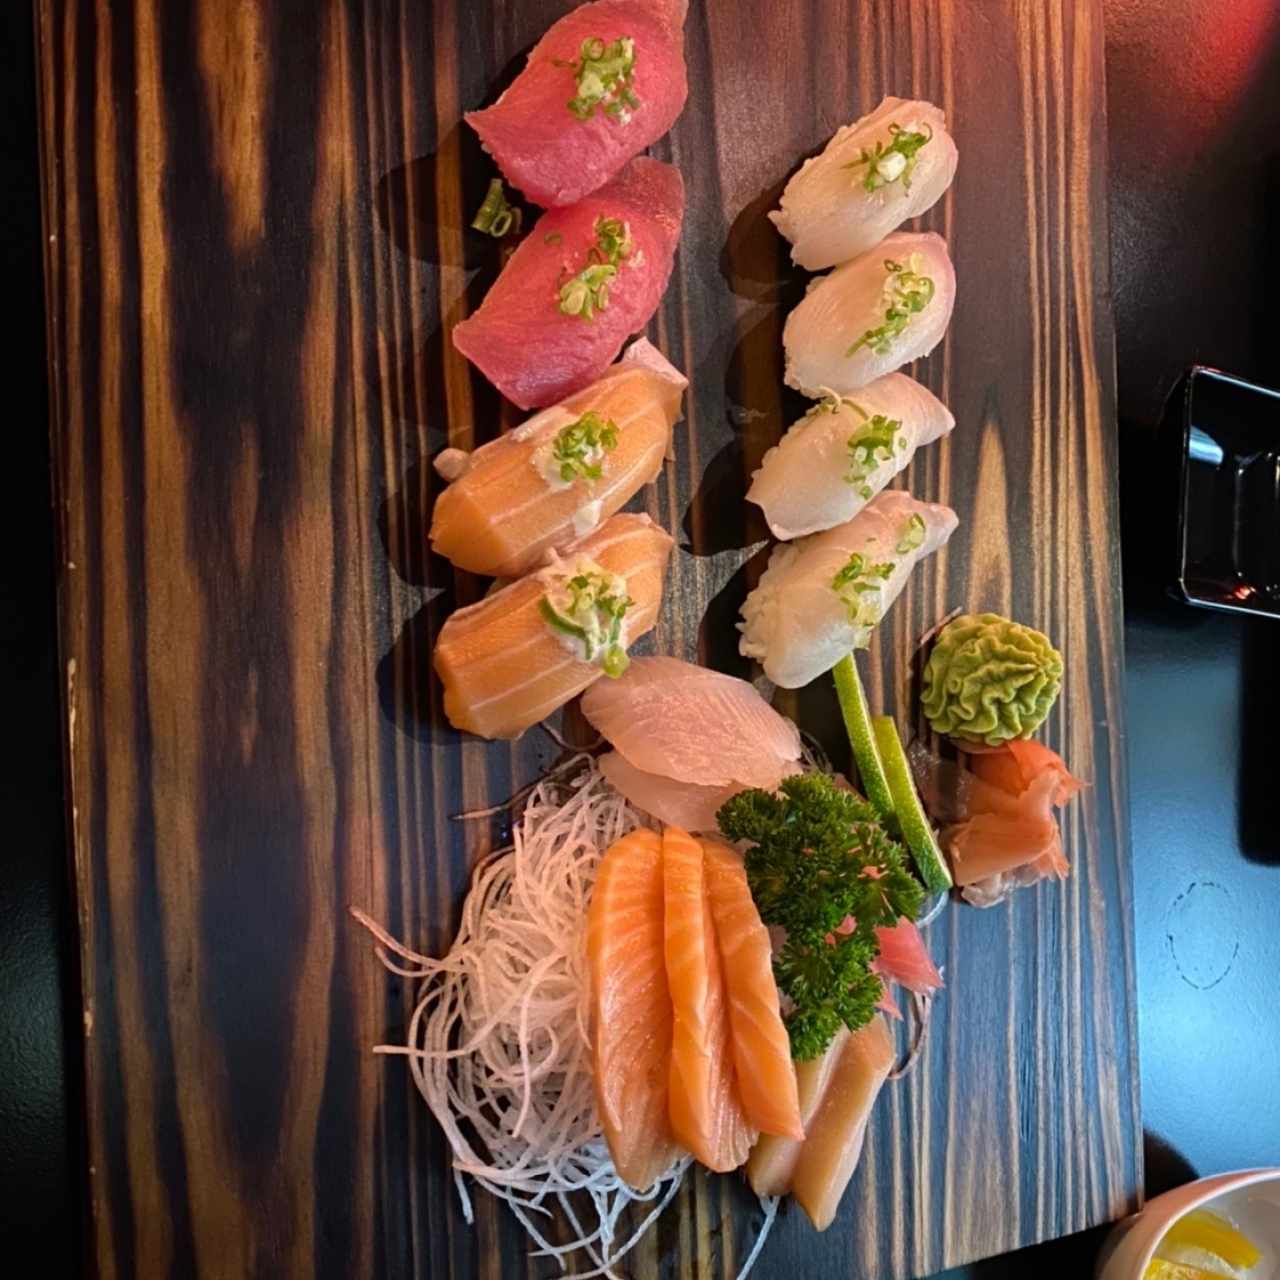 naguiri y sashimi combo 